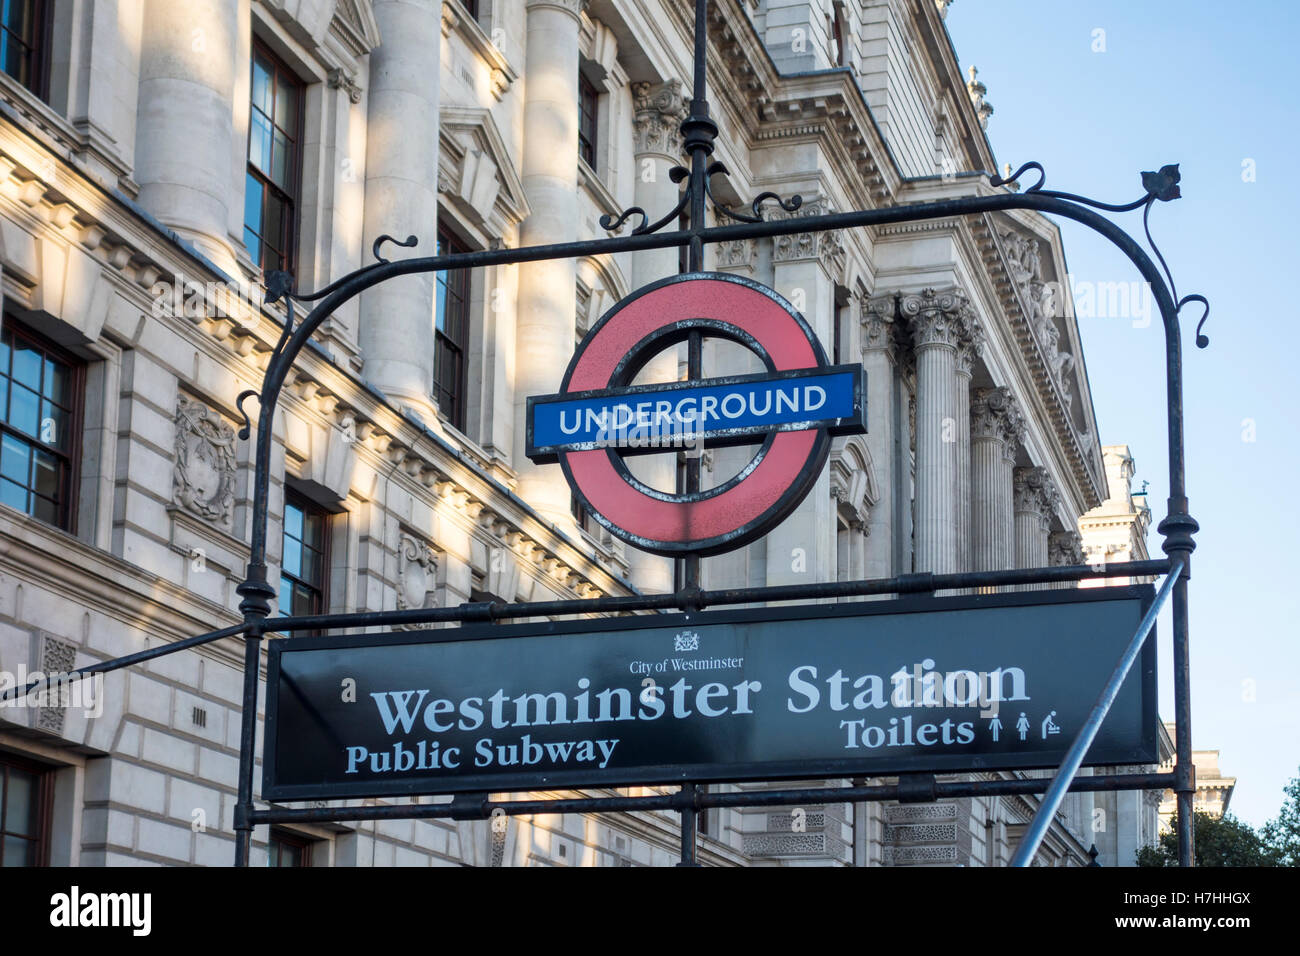 Westminster Station London Underground sign, Whitehall, London, UK Stock Photo